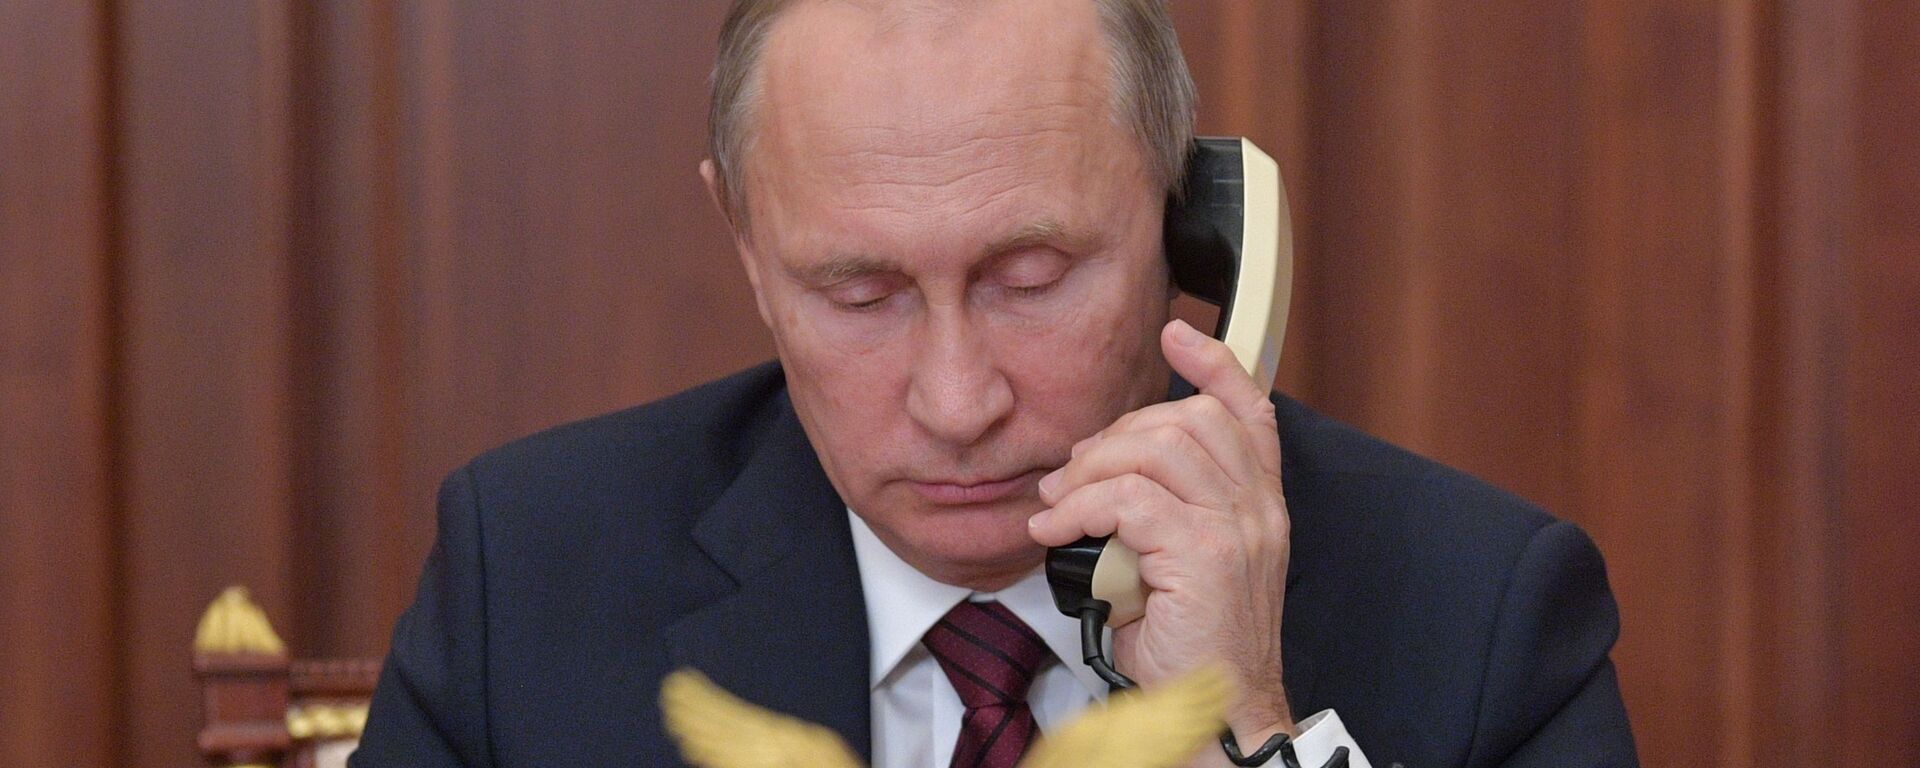 Президент РФ Владимир Путин во время телефонного разговора - Sputnik Таджикистан, 1920, 22.07.2021